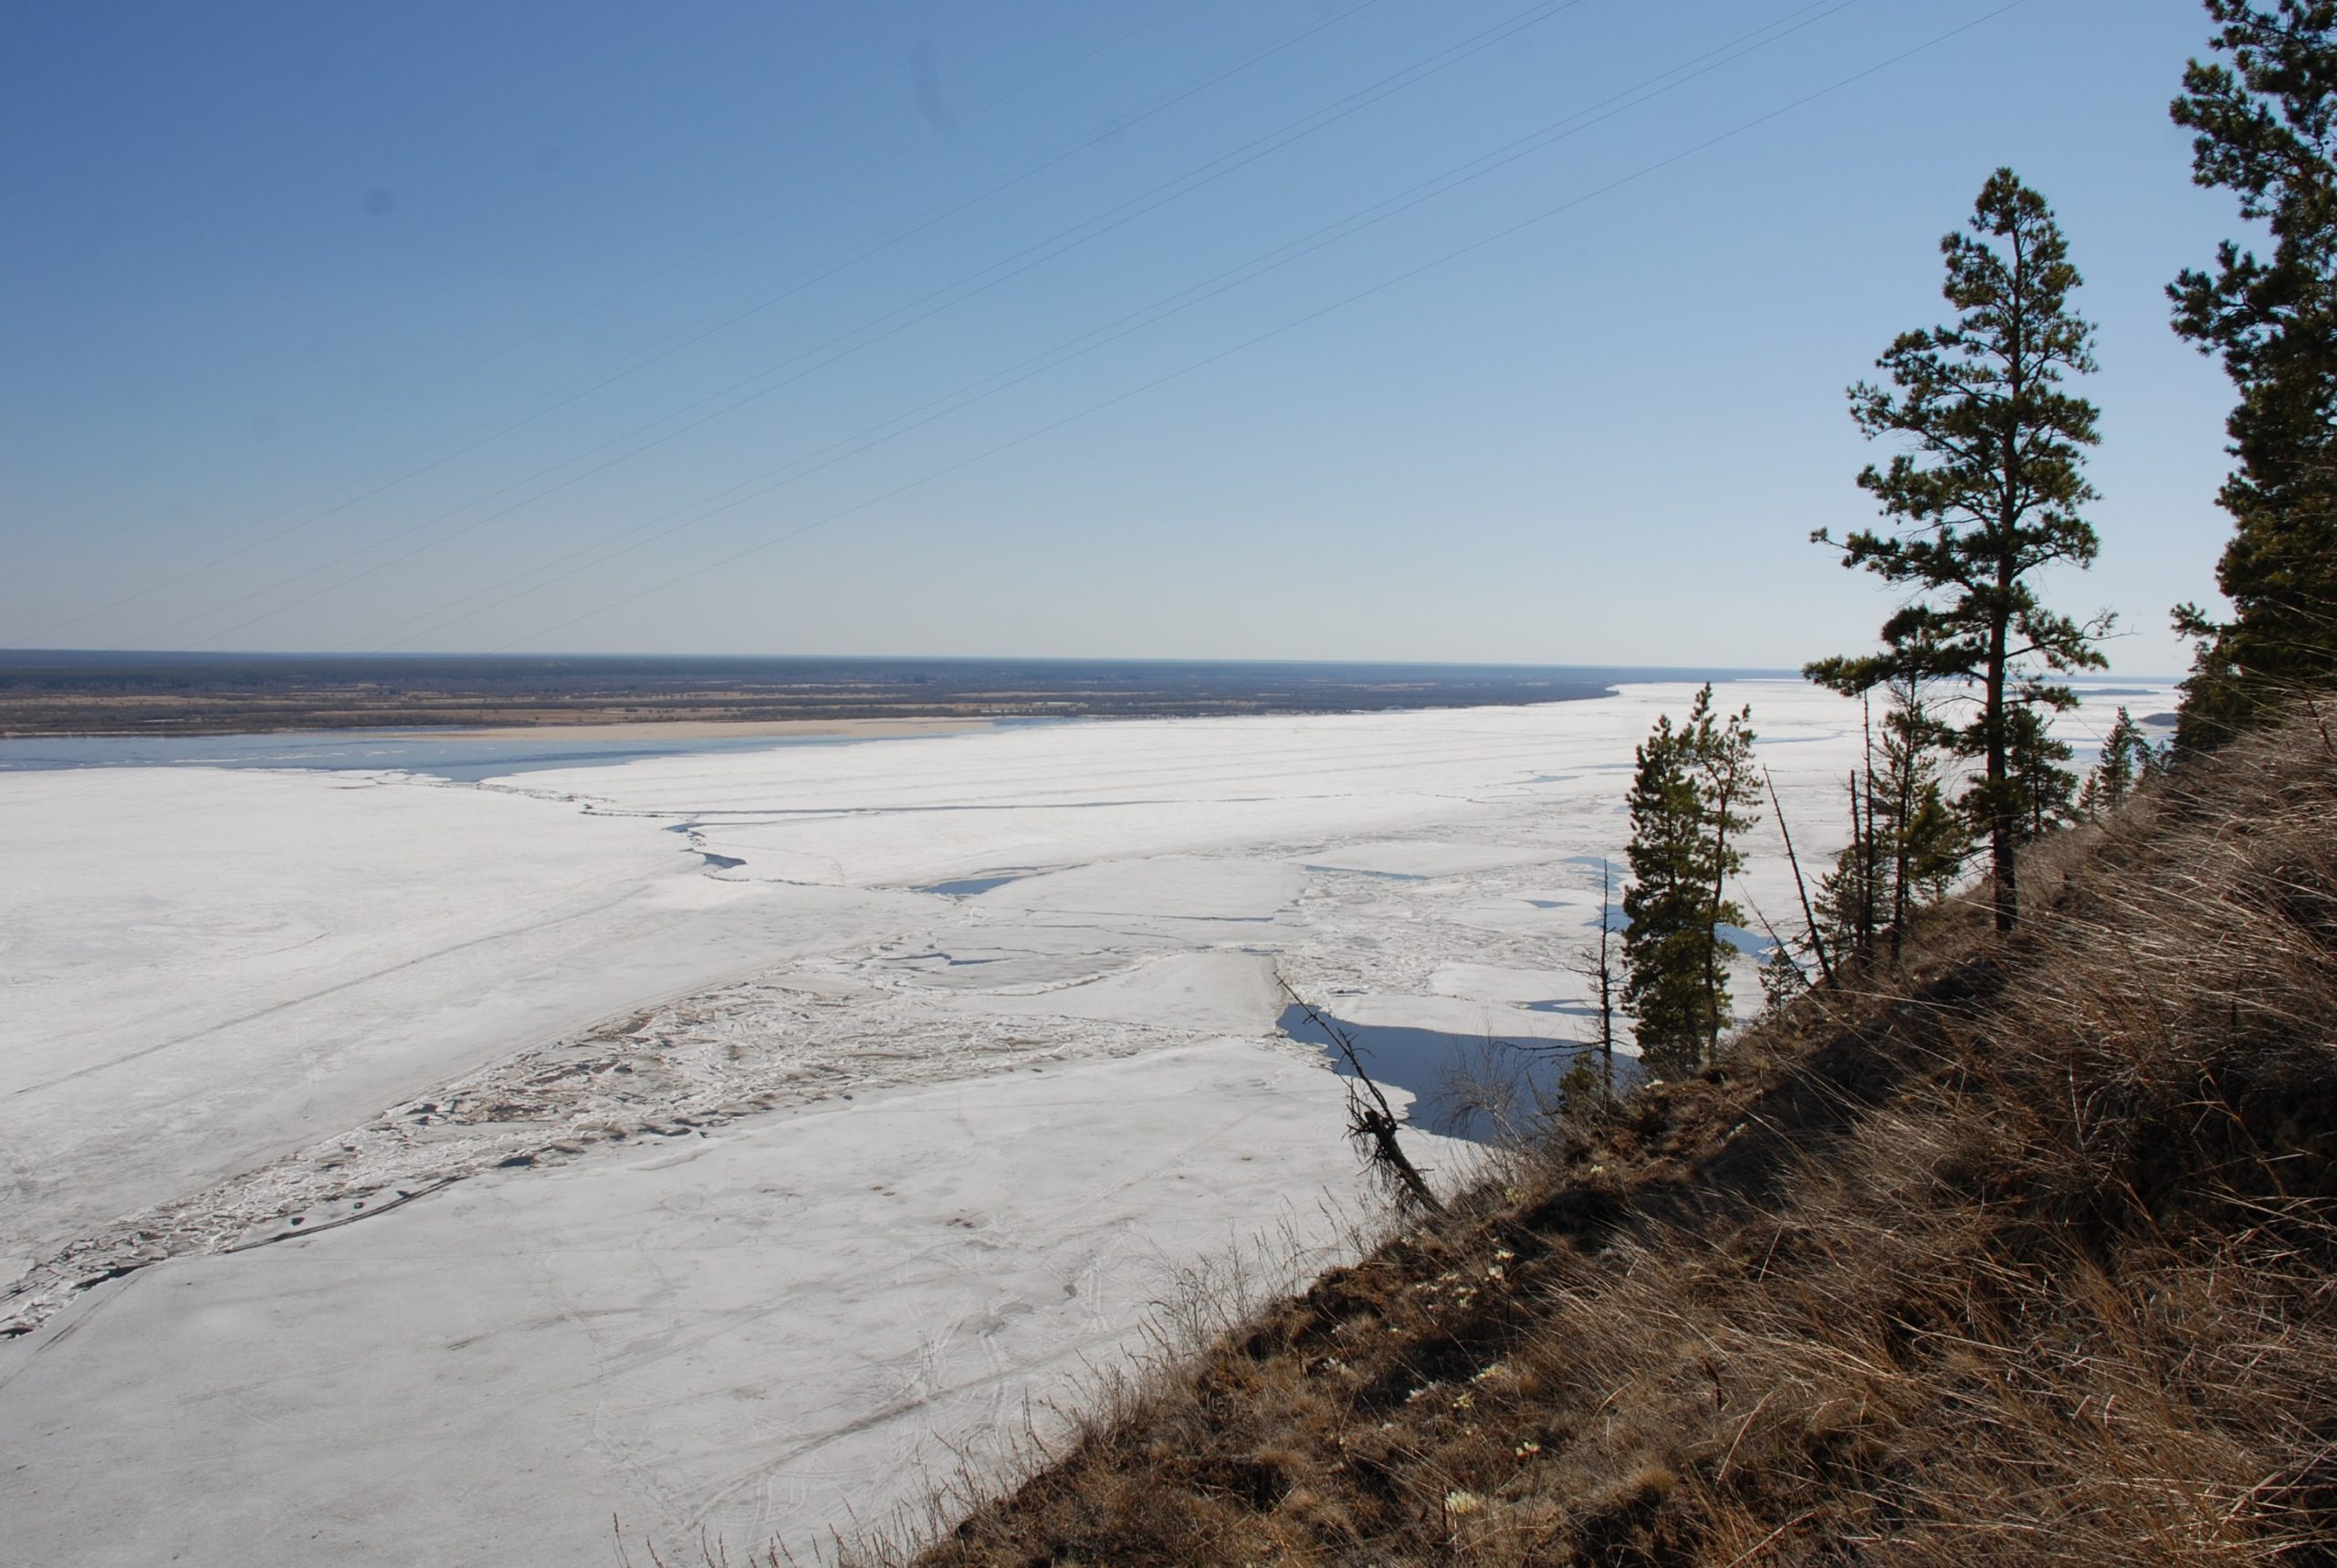 Ледоход на реке Лена в 2020 году активно продвигается и река может затопить два поселка, состояние и толщина льда на сегодня